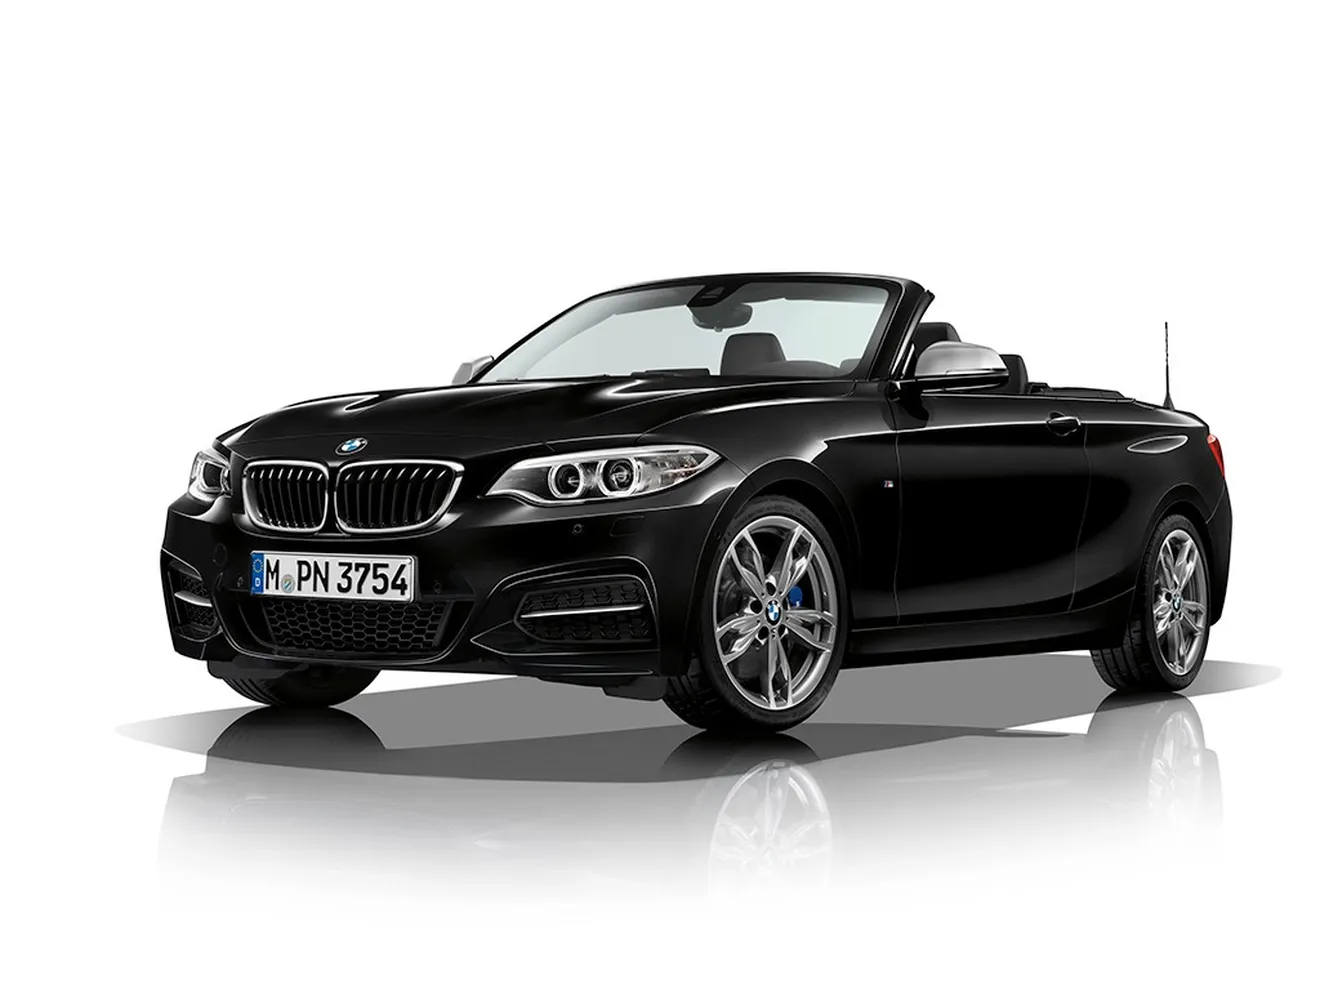 Precios de los BMW M140i y M240i para España